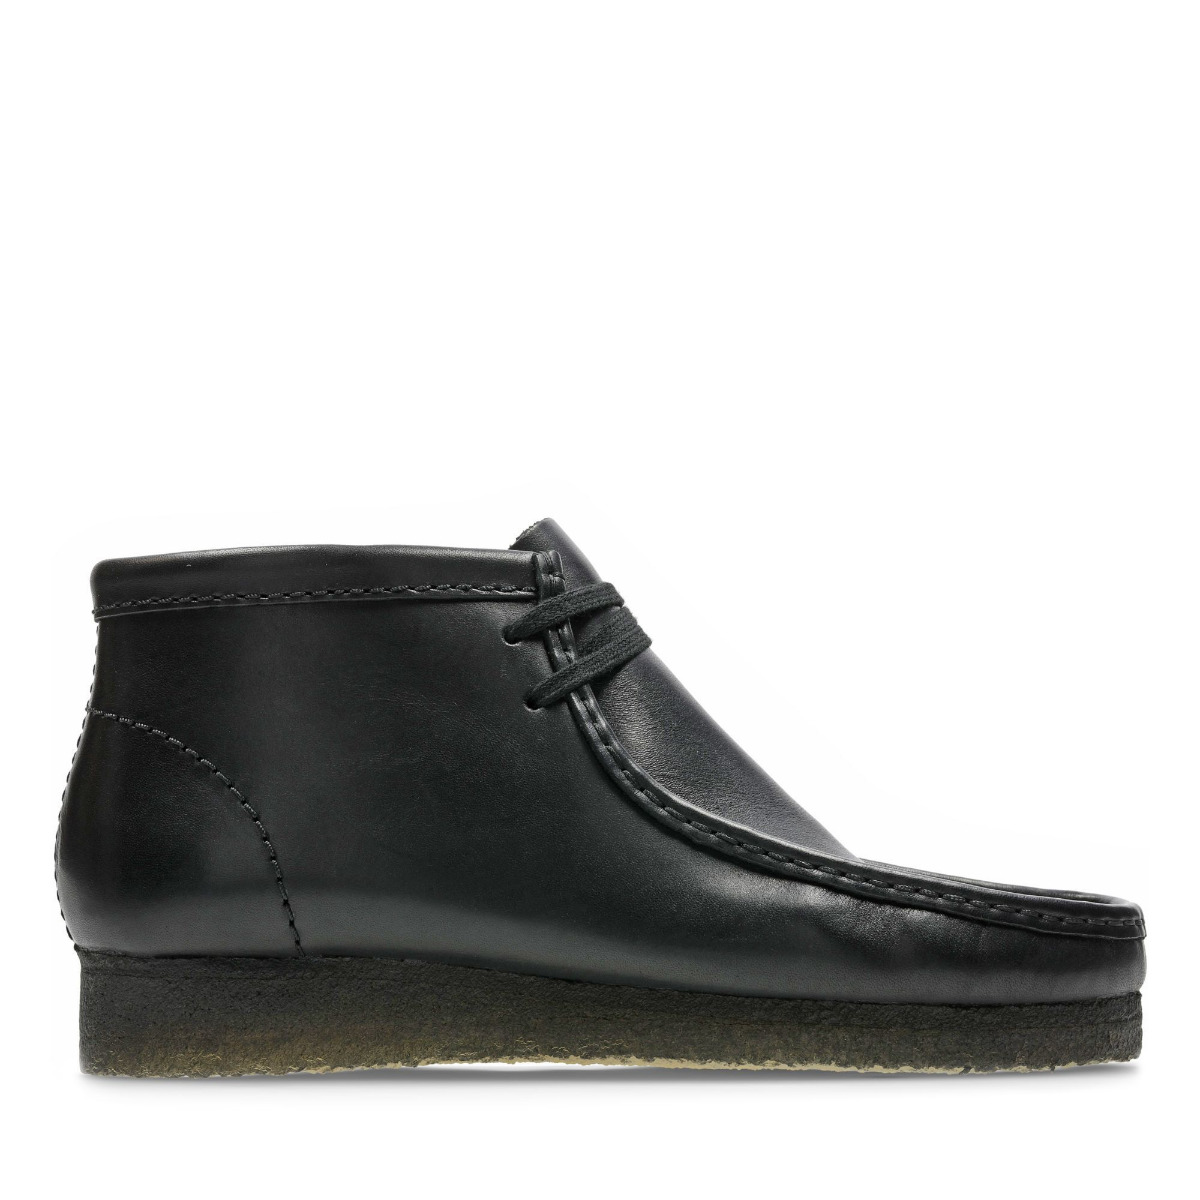 Clarks Wallabee Boot Herren Black Leather-45